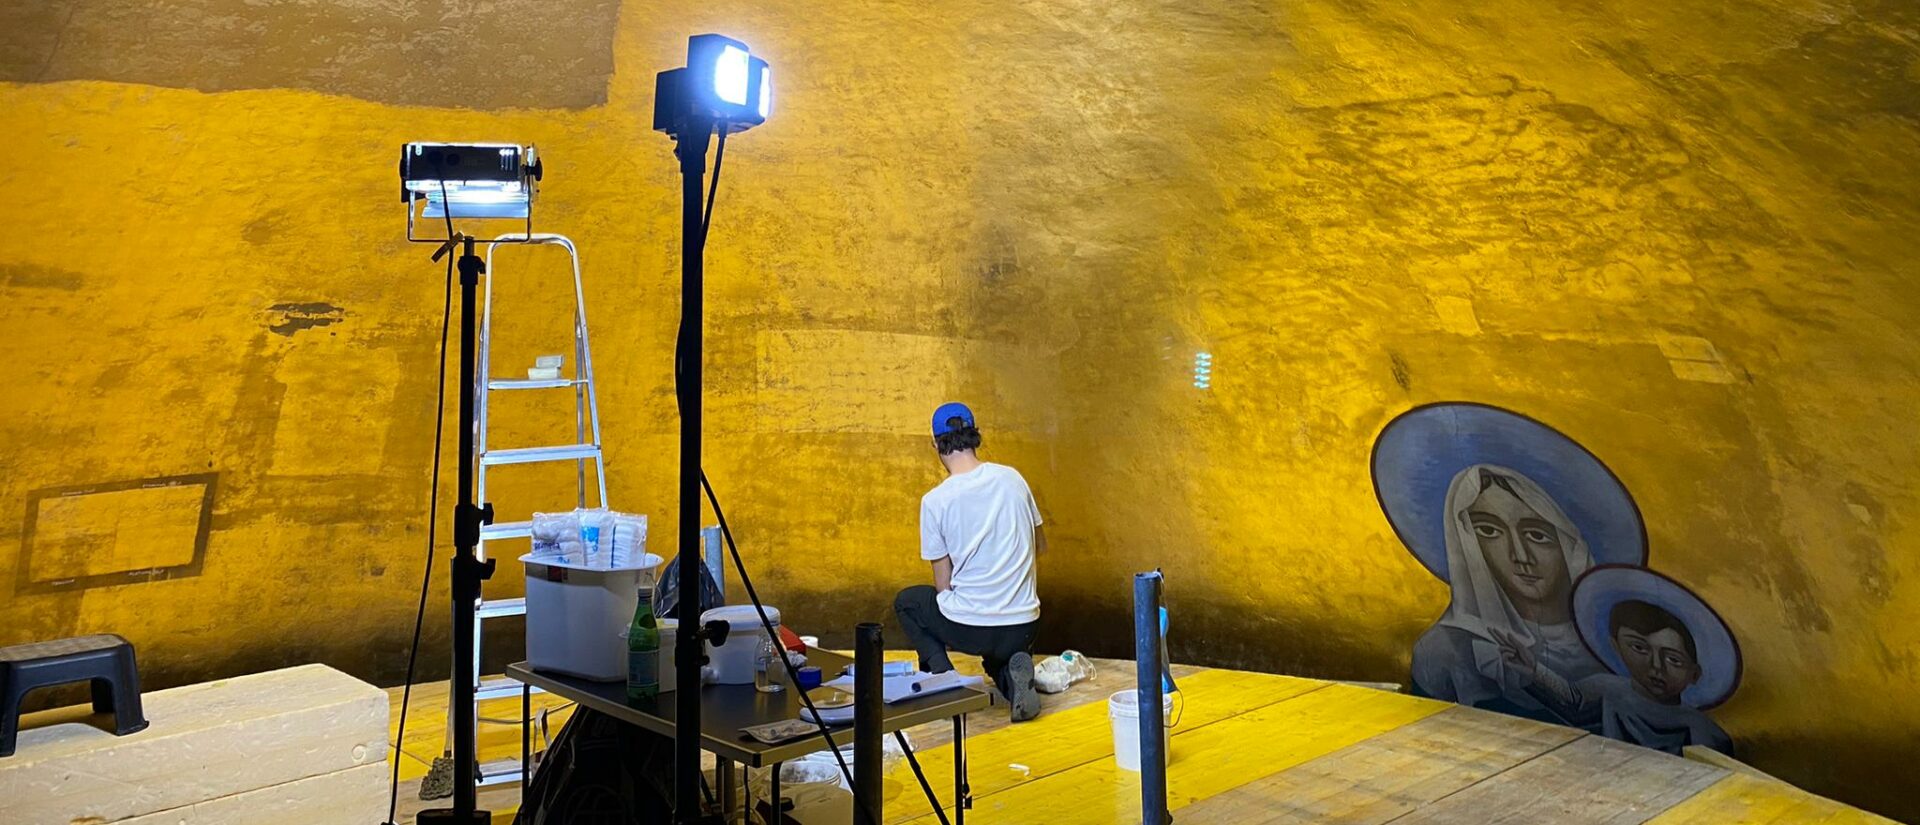 Les restaurateurs de la fresque de Gino Severini ont travaillé d'arrache-pied pendant six mois | © CONSORTIUM OLIVIER GUYOT JULIAN JAMES